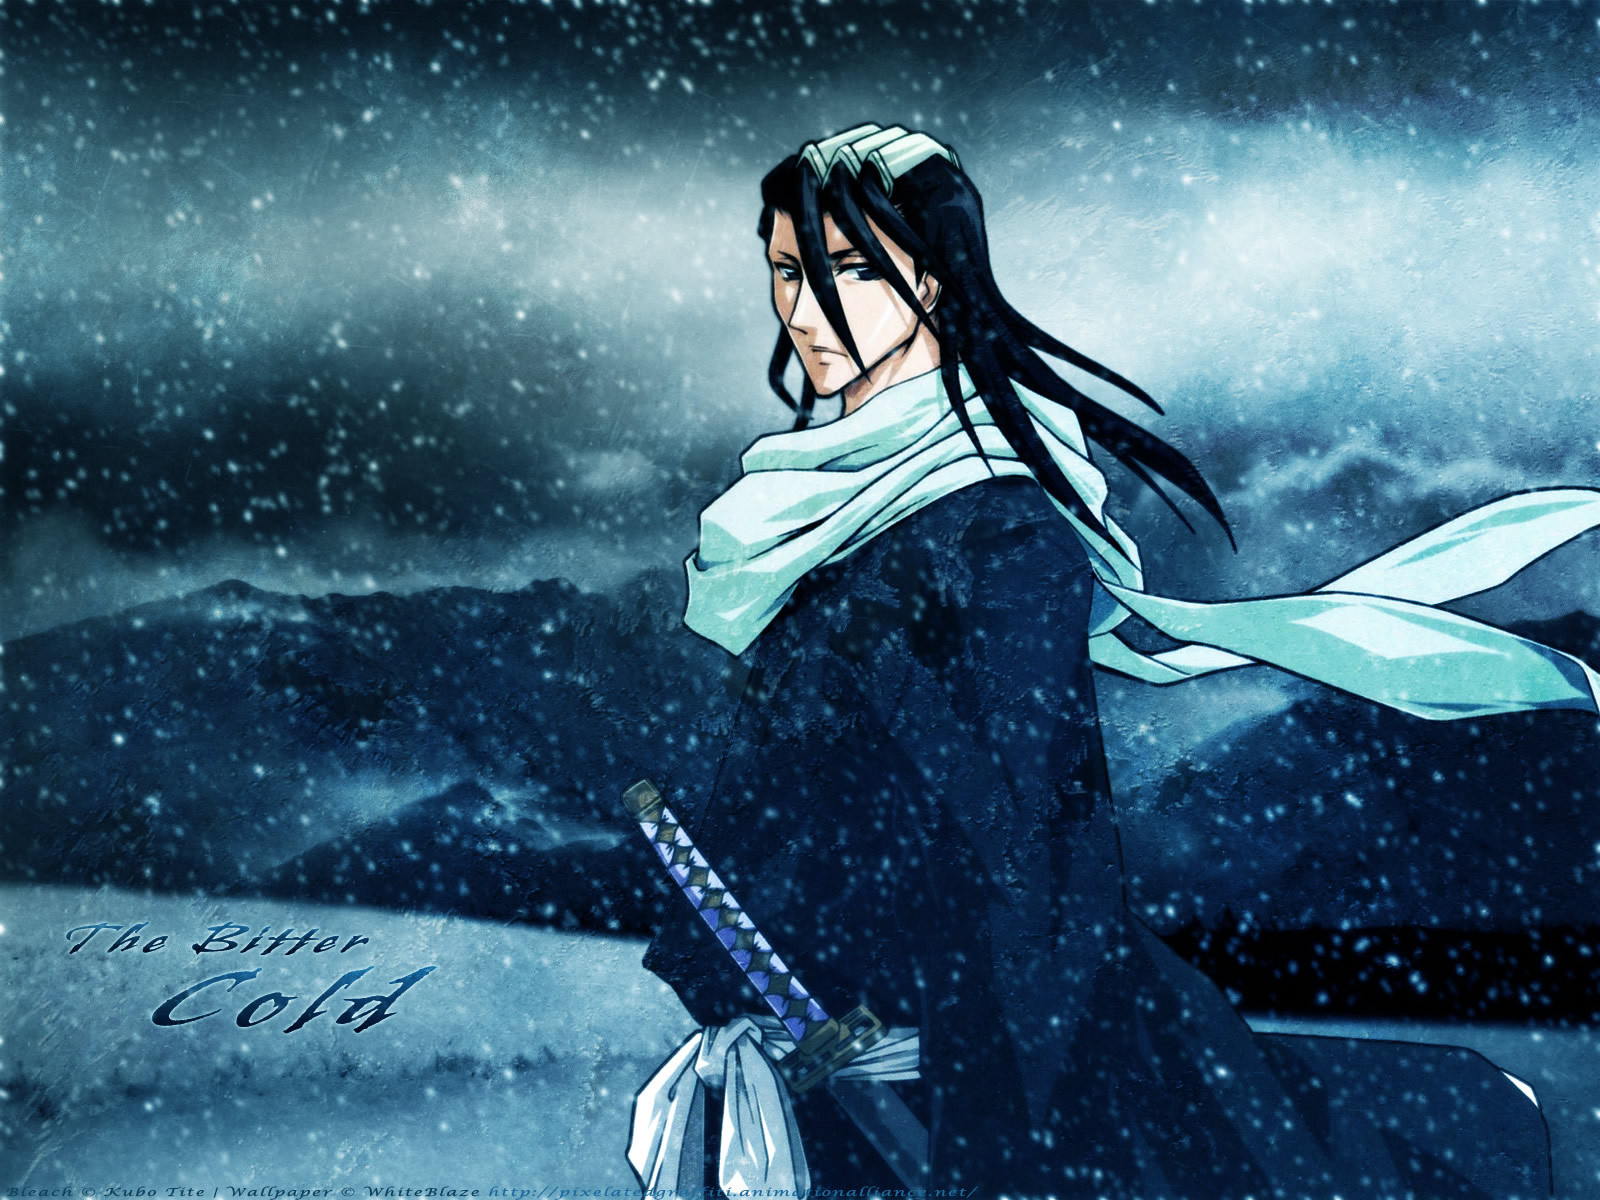 Kuchiki Byakuya Image HD Wallpaper And Background